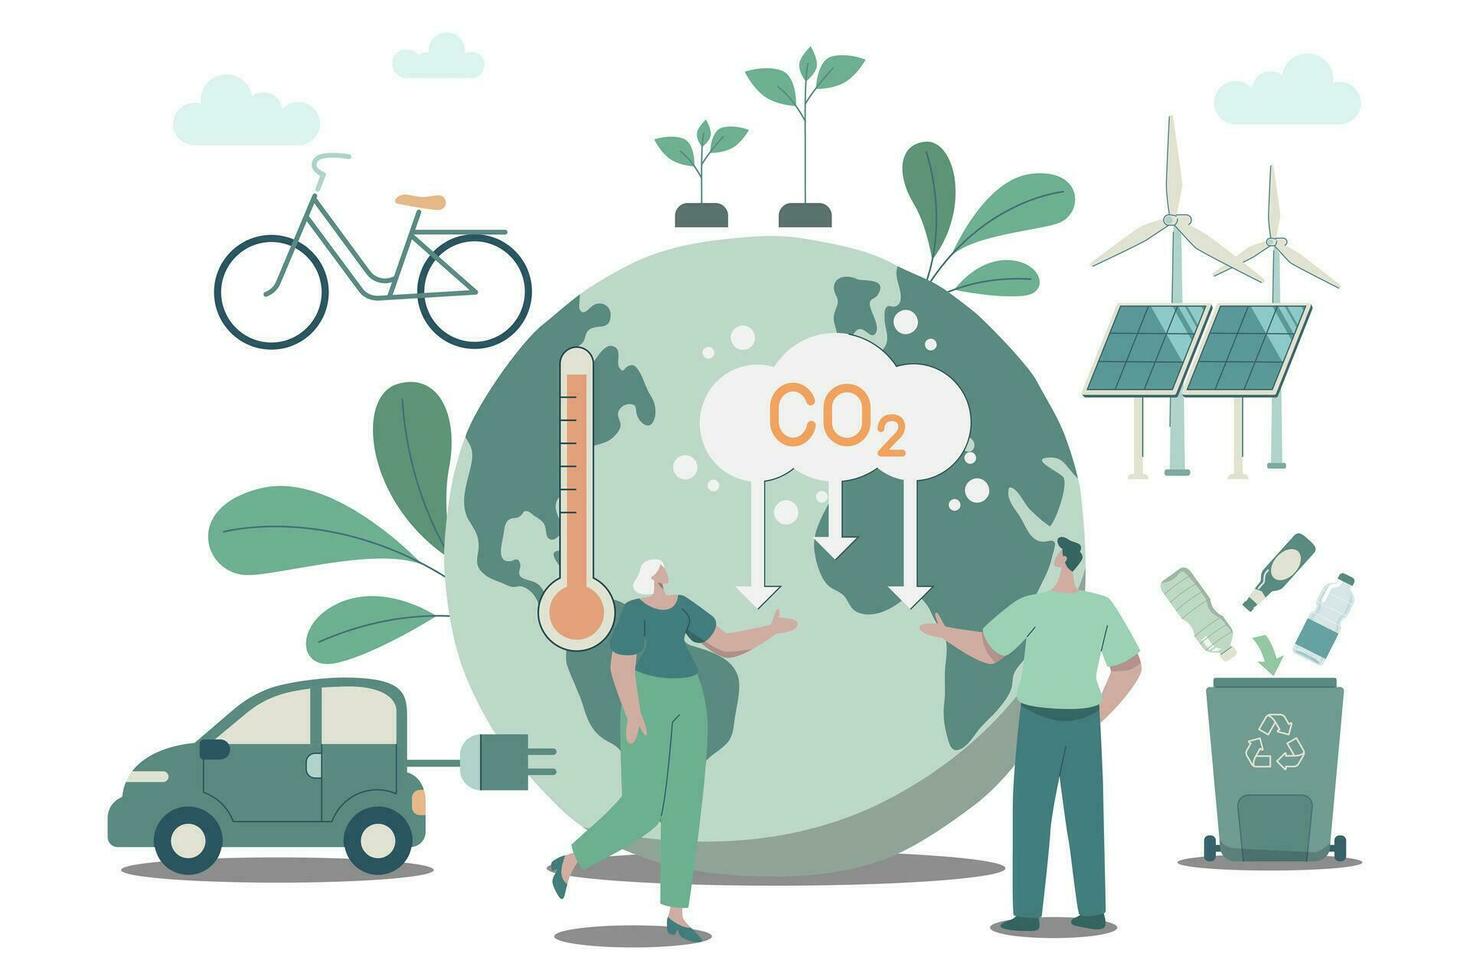 desarrollando sostenible co2 conceptos, utilizando limpiar energía, sostenible ambiental gestión. clima cambio problema concepto. vector diseño ilustración.